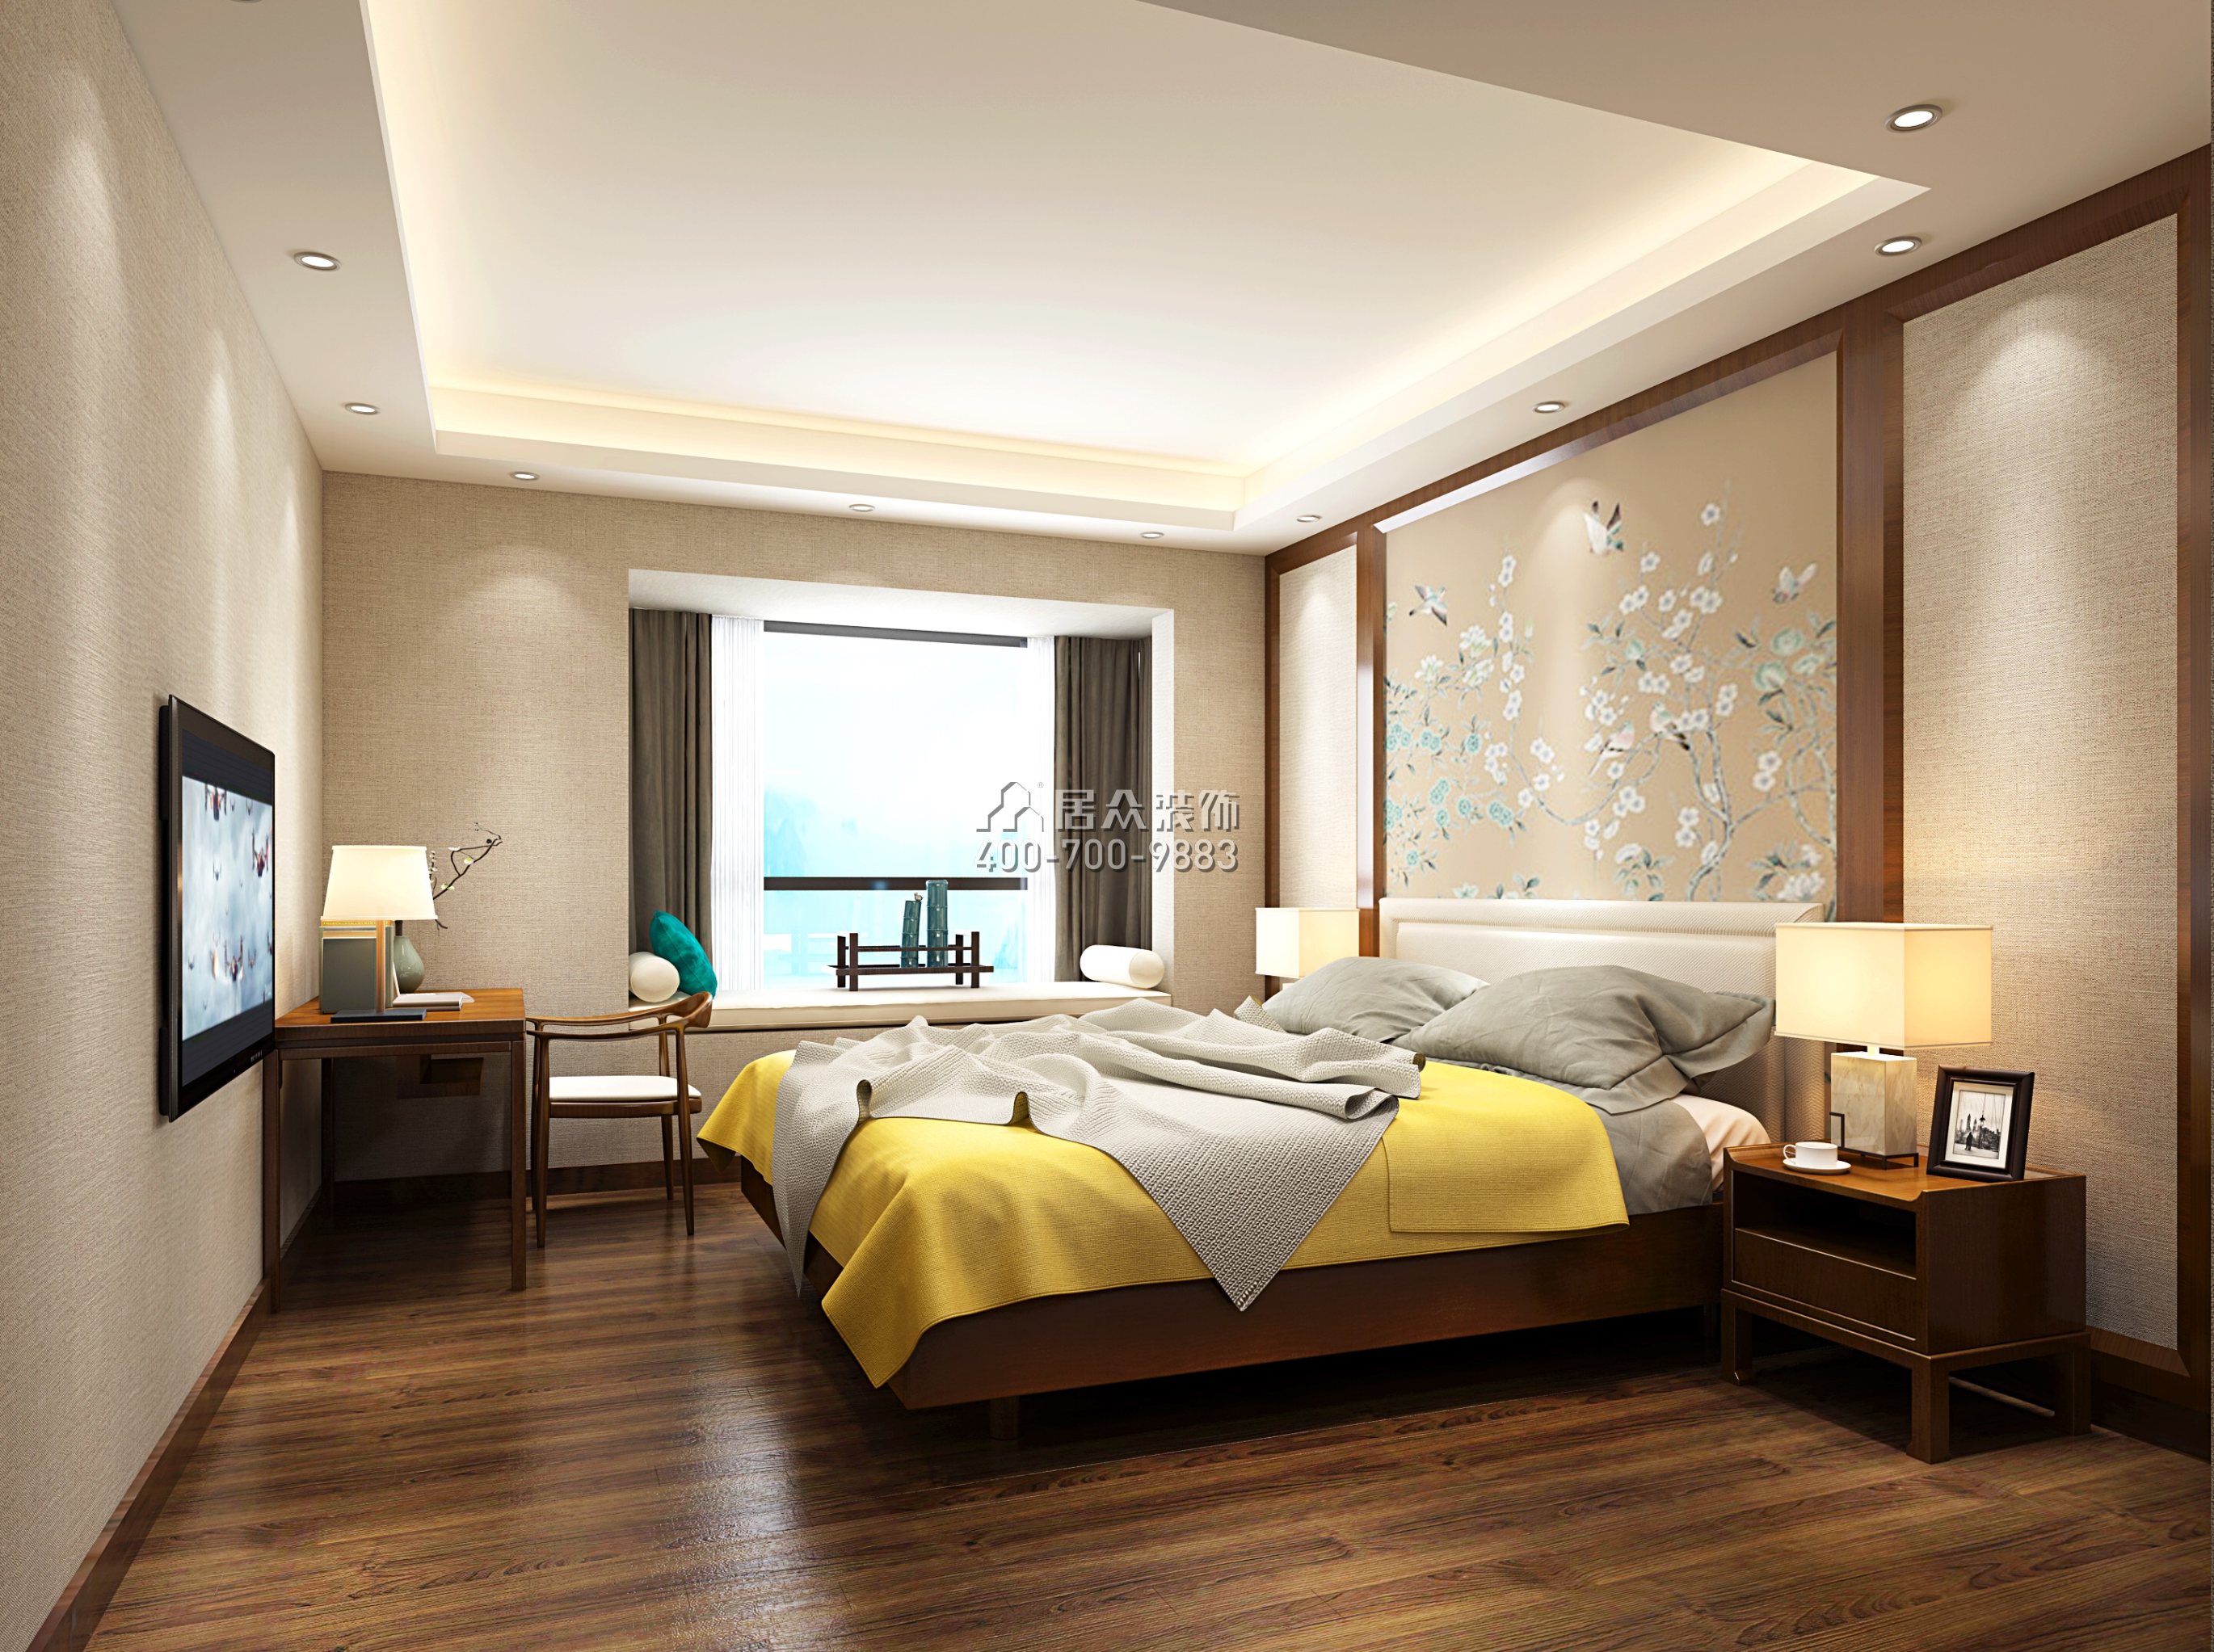 朝南凯旋汇223平方米中式风格平层户型卧室装修效果图